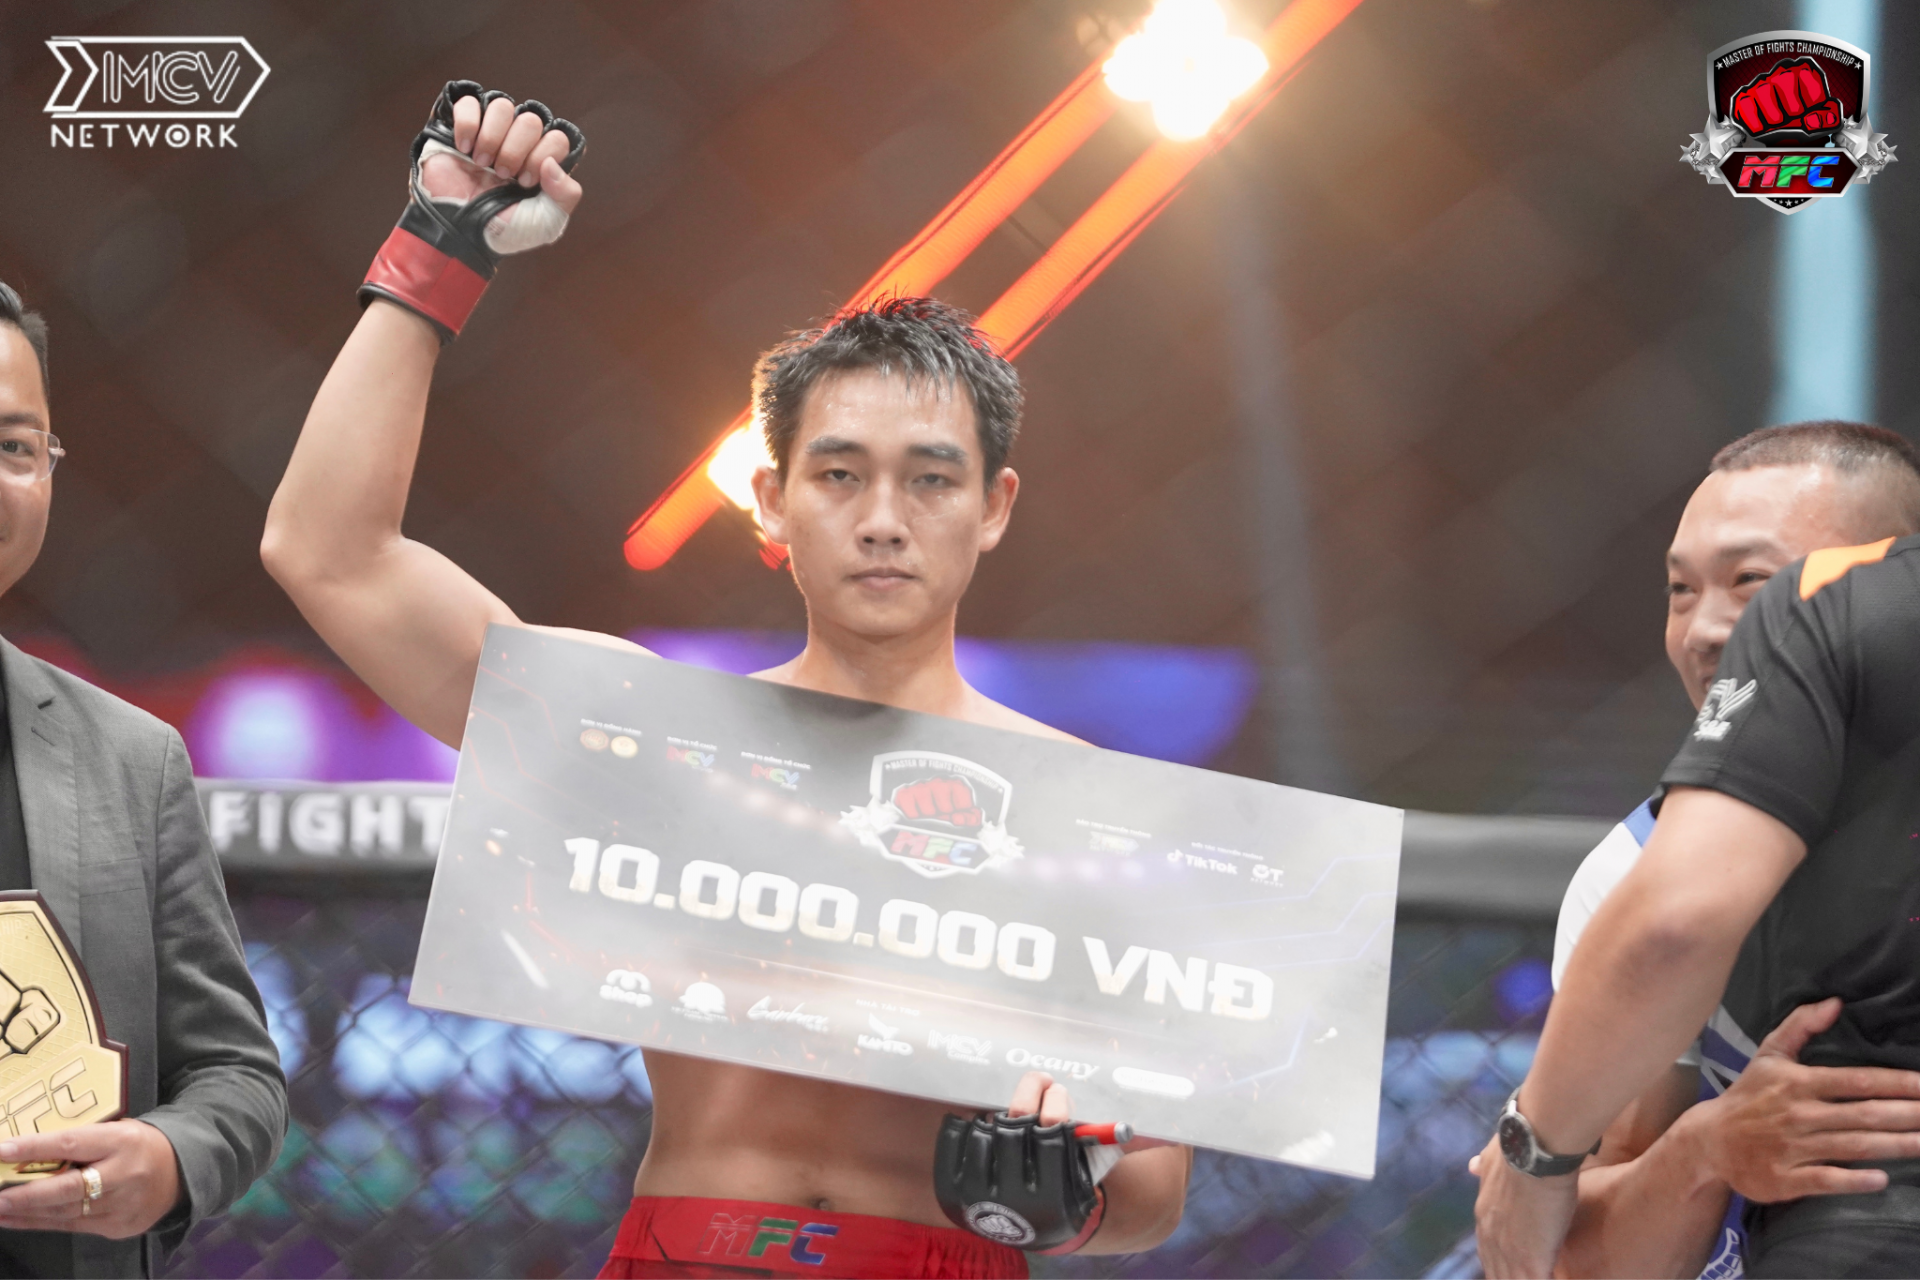 Đánh bại đối thủ bằng một đòn siết cổ, Phạm Văn Nam chiến thắng đầy thuyết phục tại Master Of Fights Championship 2023